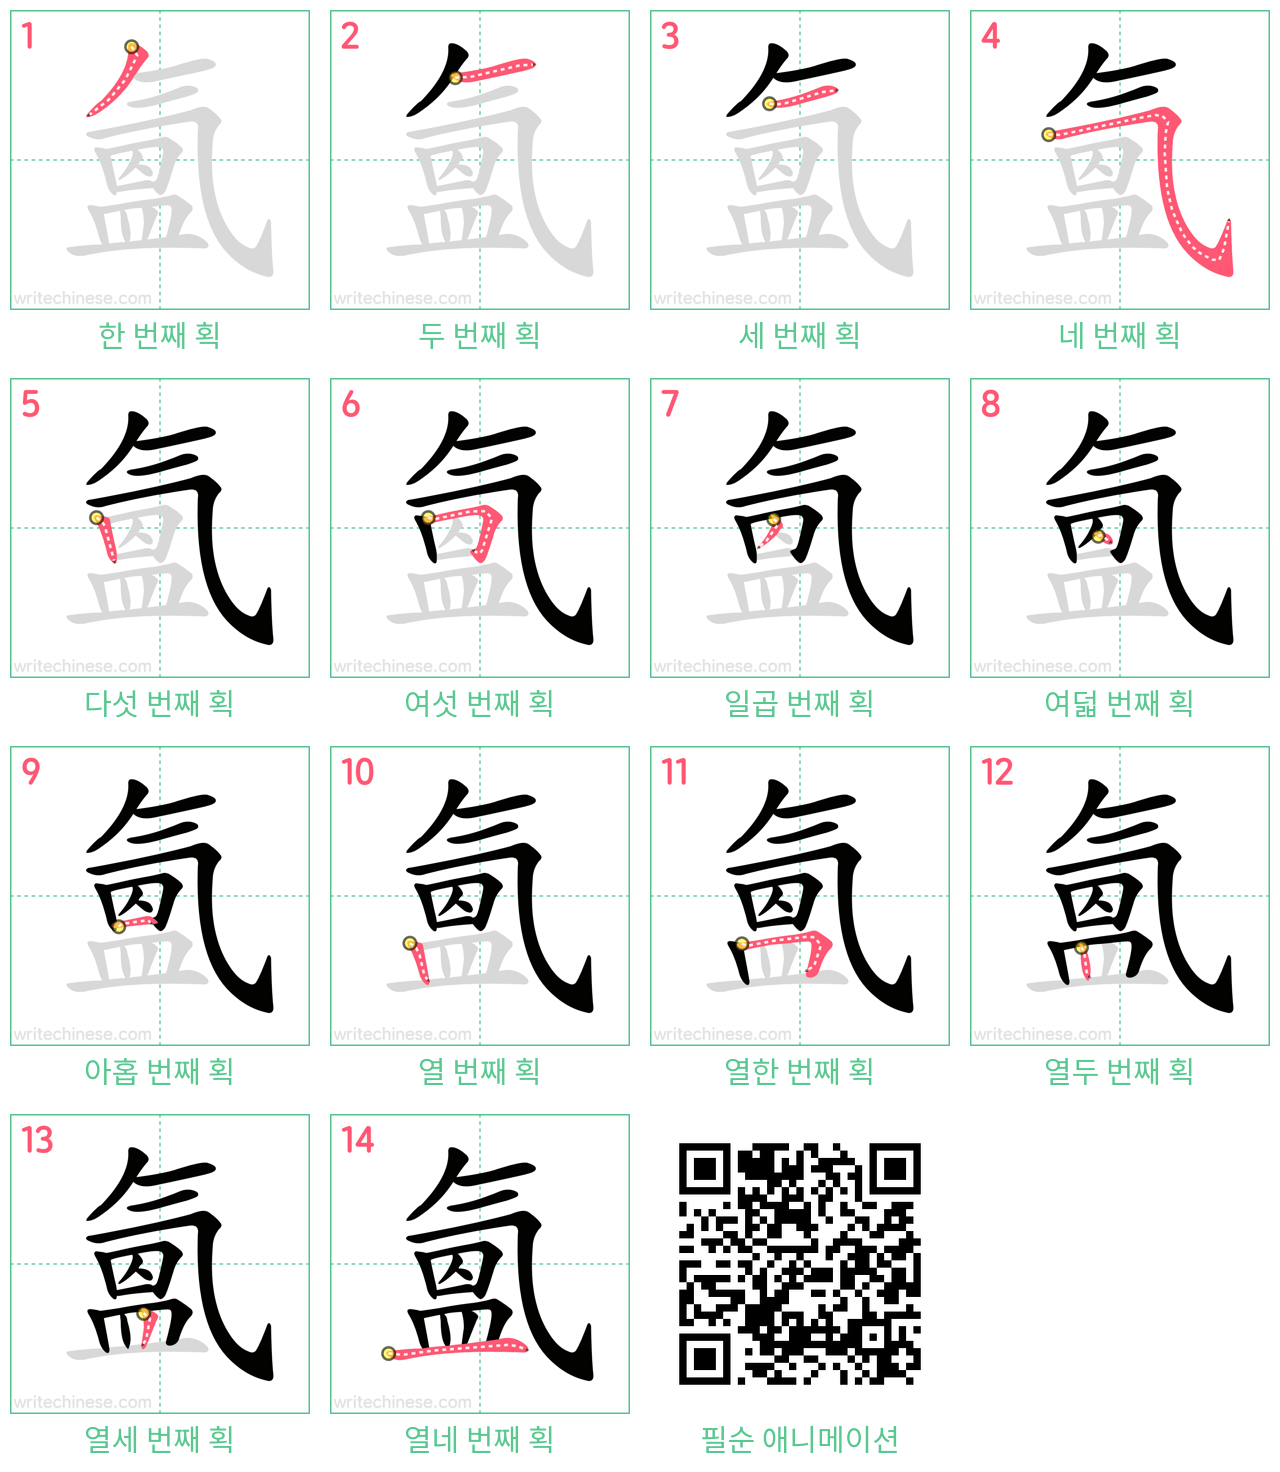 氳 step-by-step stroke order diagrams